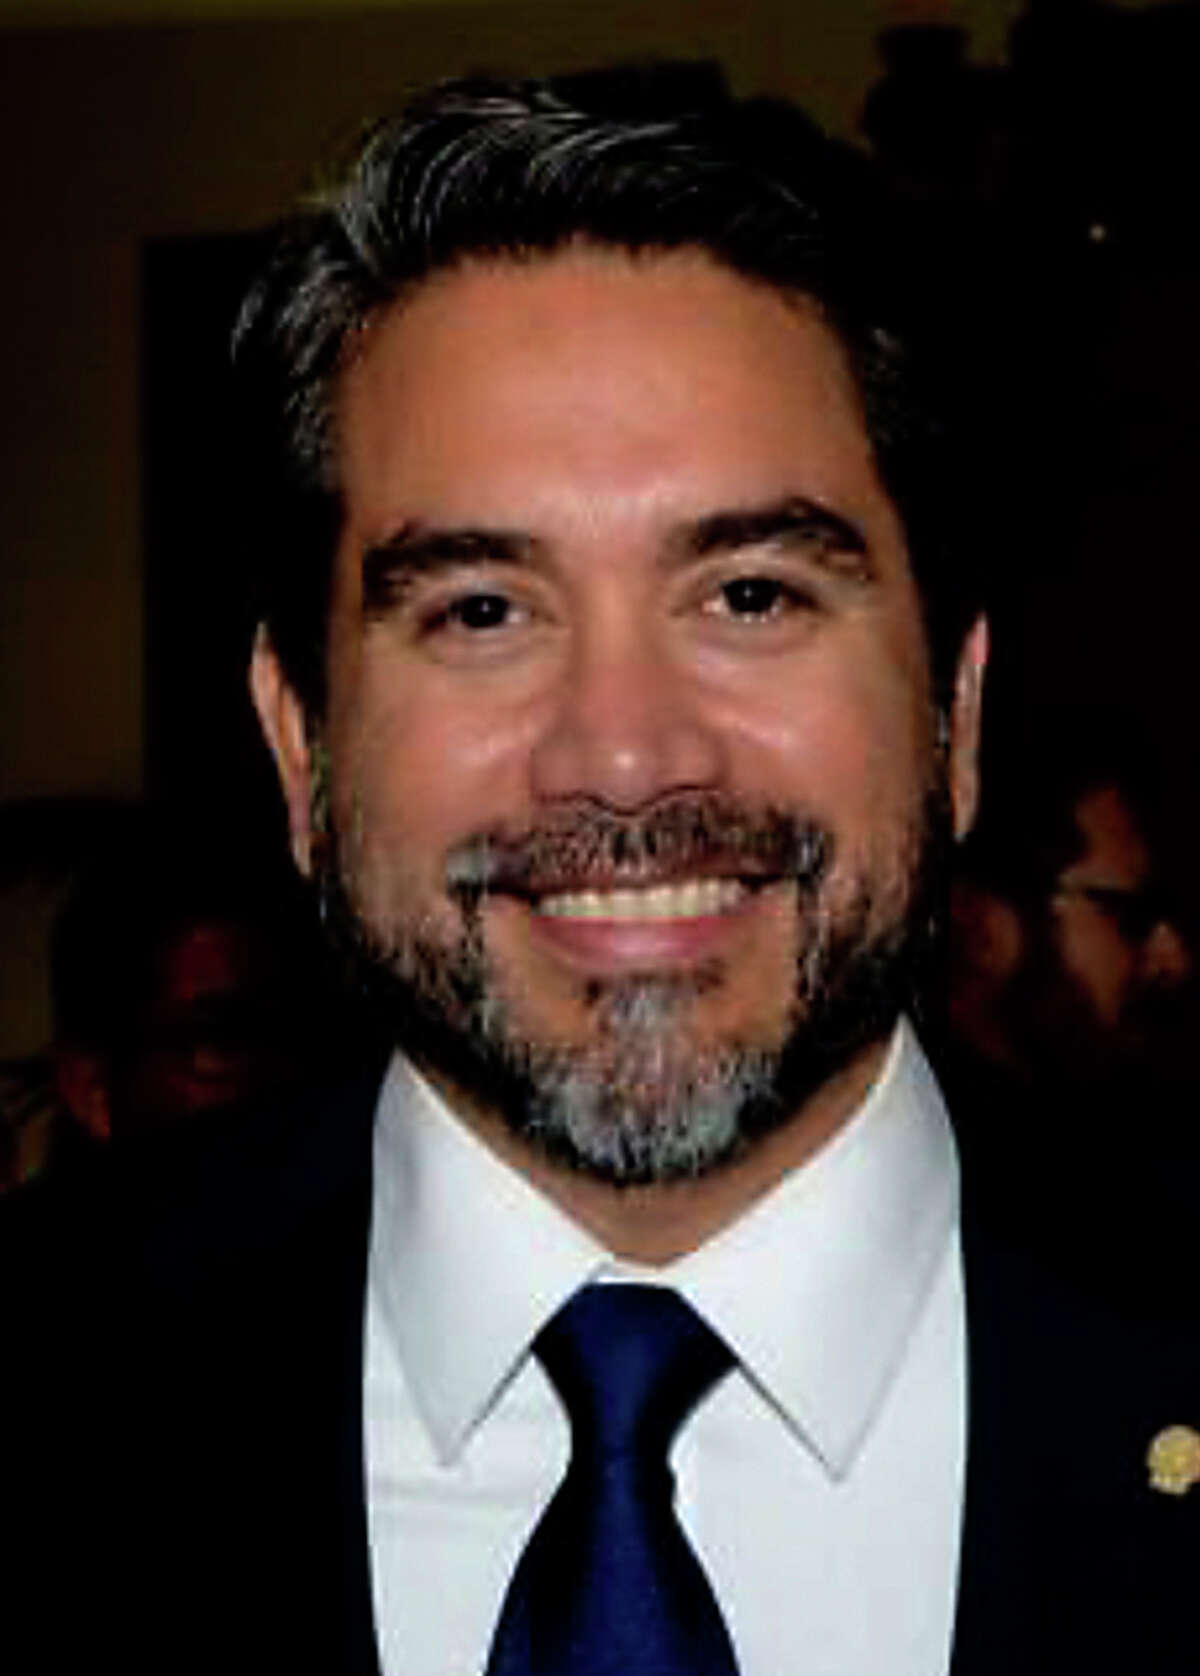 District 1 City Councilman Roberto Treviño